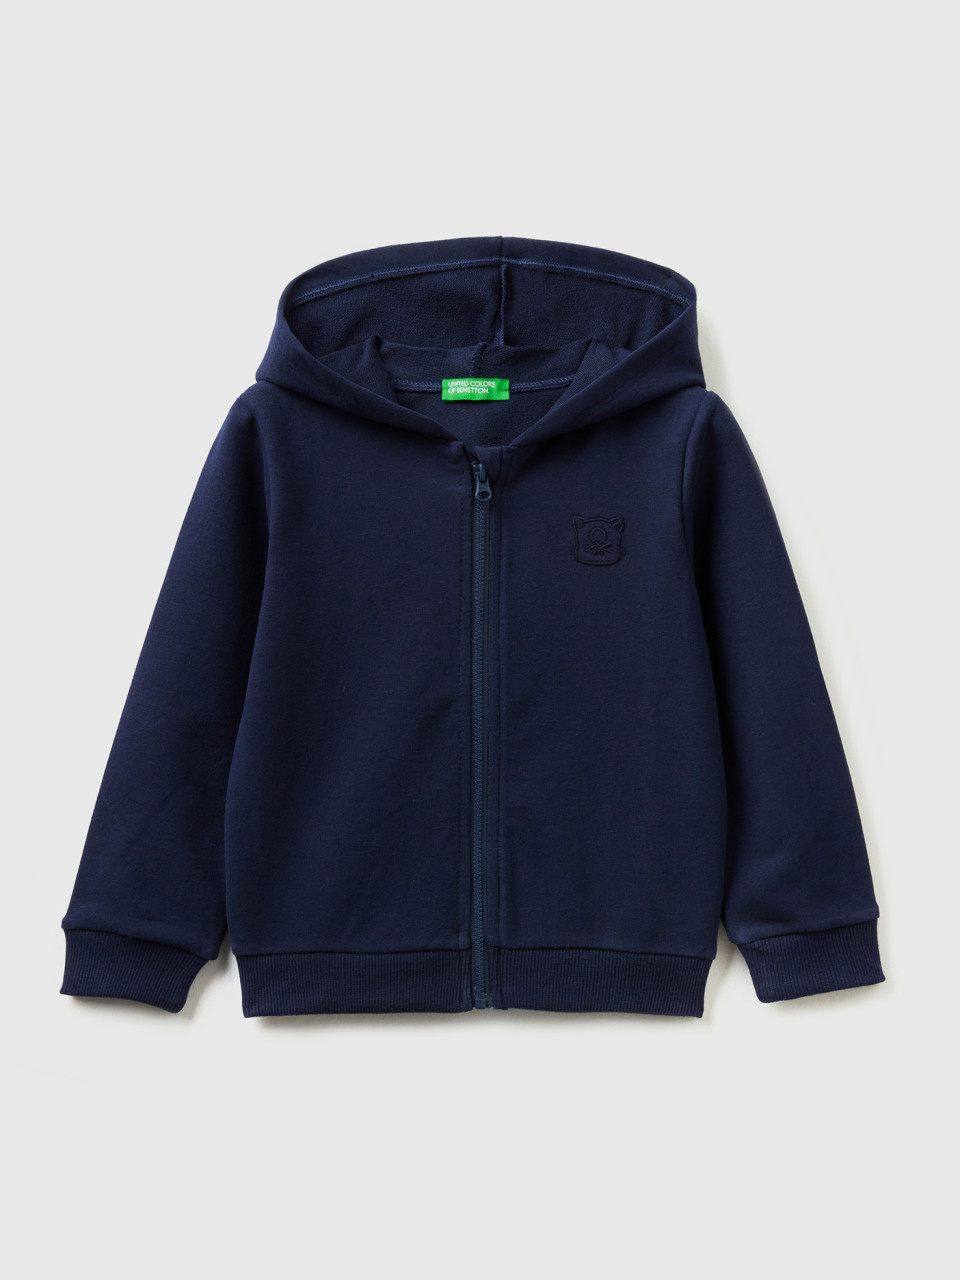 Benetton, Warm Sweatshirt With Zip And Embroidered Logo, Dark Blue, Kids